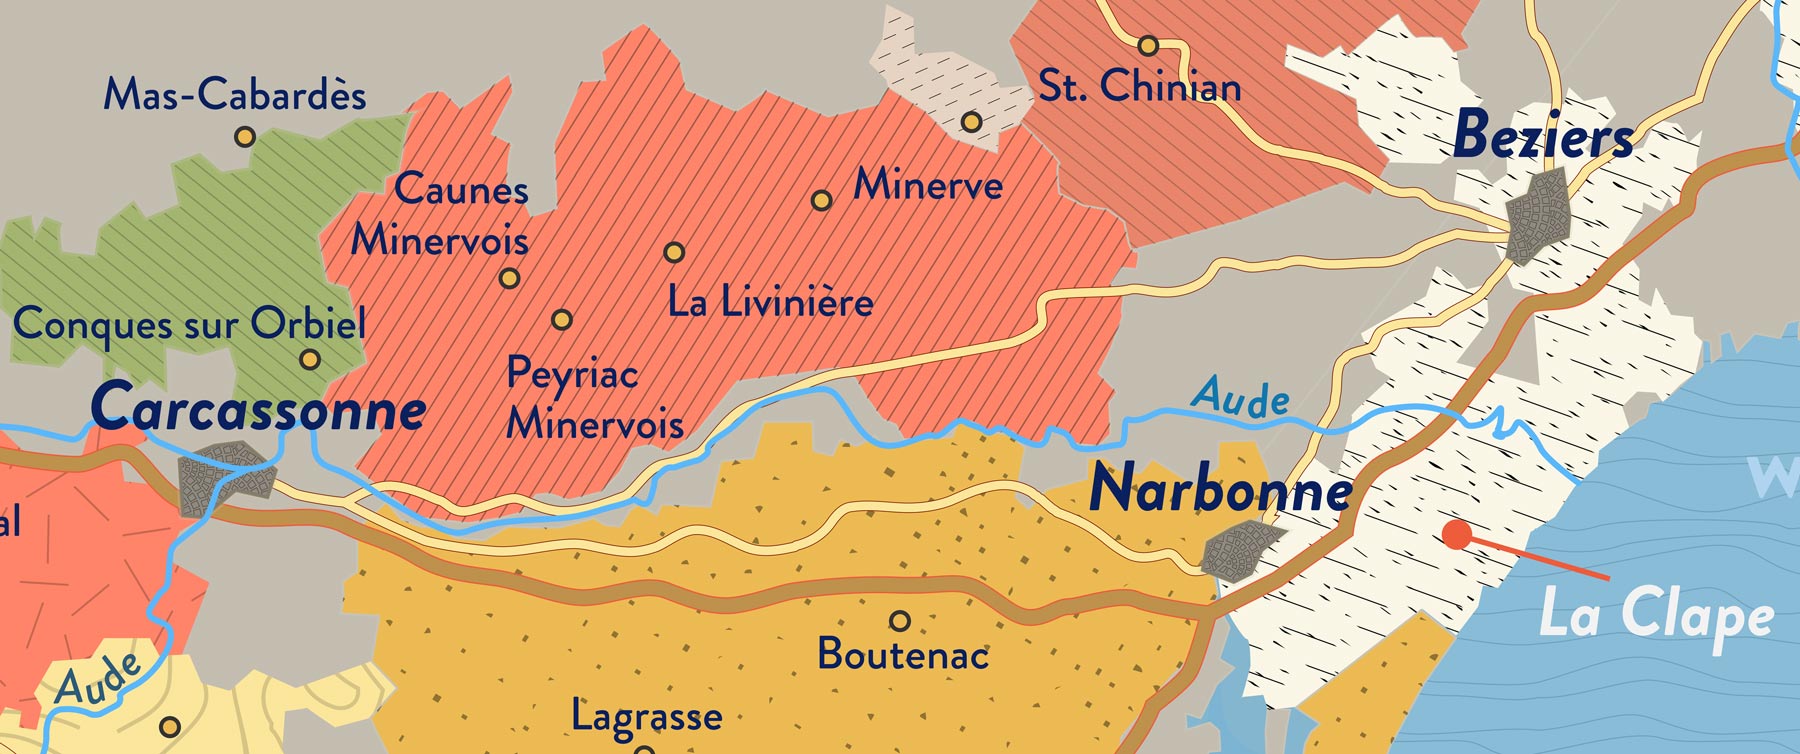 Über Jahrtausende haben die traumhaften Bedingungen im Languedoc den Winzern prallvolle Lager dunkler, belangloser Weine beschert. Solange sie genug verkaufen konnten, lebten die Winzer zufrieden ihr bescheidenes Leben unter der ständig lachenden Sonne.<br><br>Den belanglosen Ruf der Weine stießen zuerst einige mutige um, die im Languedoc «richtigen» Wein erzeugt haben. Ihr Erfolg spornte viele zu mehr Einsatz an, der im Languedoc mit enormen Qualitätssprüngen belohnt wurde. Die Erfolge haben eine beeindruckende Basis an Winzern geschaffen, die wunderbare Weine erzeugen.<br><br>